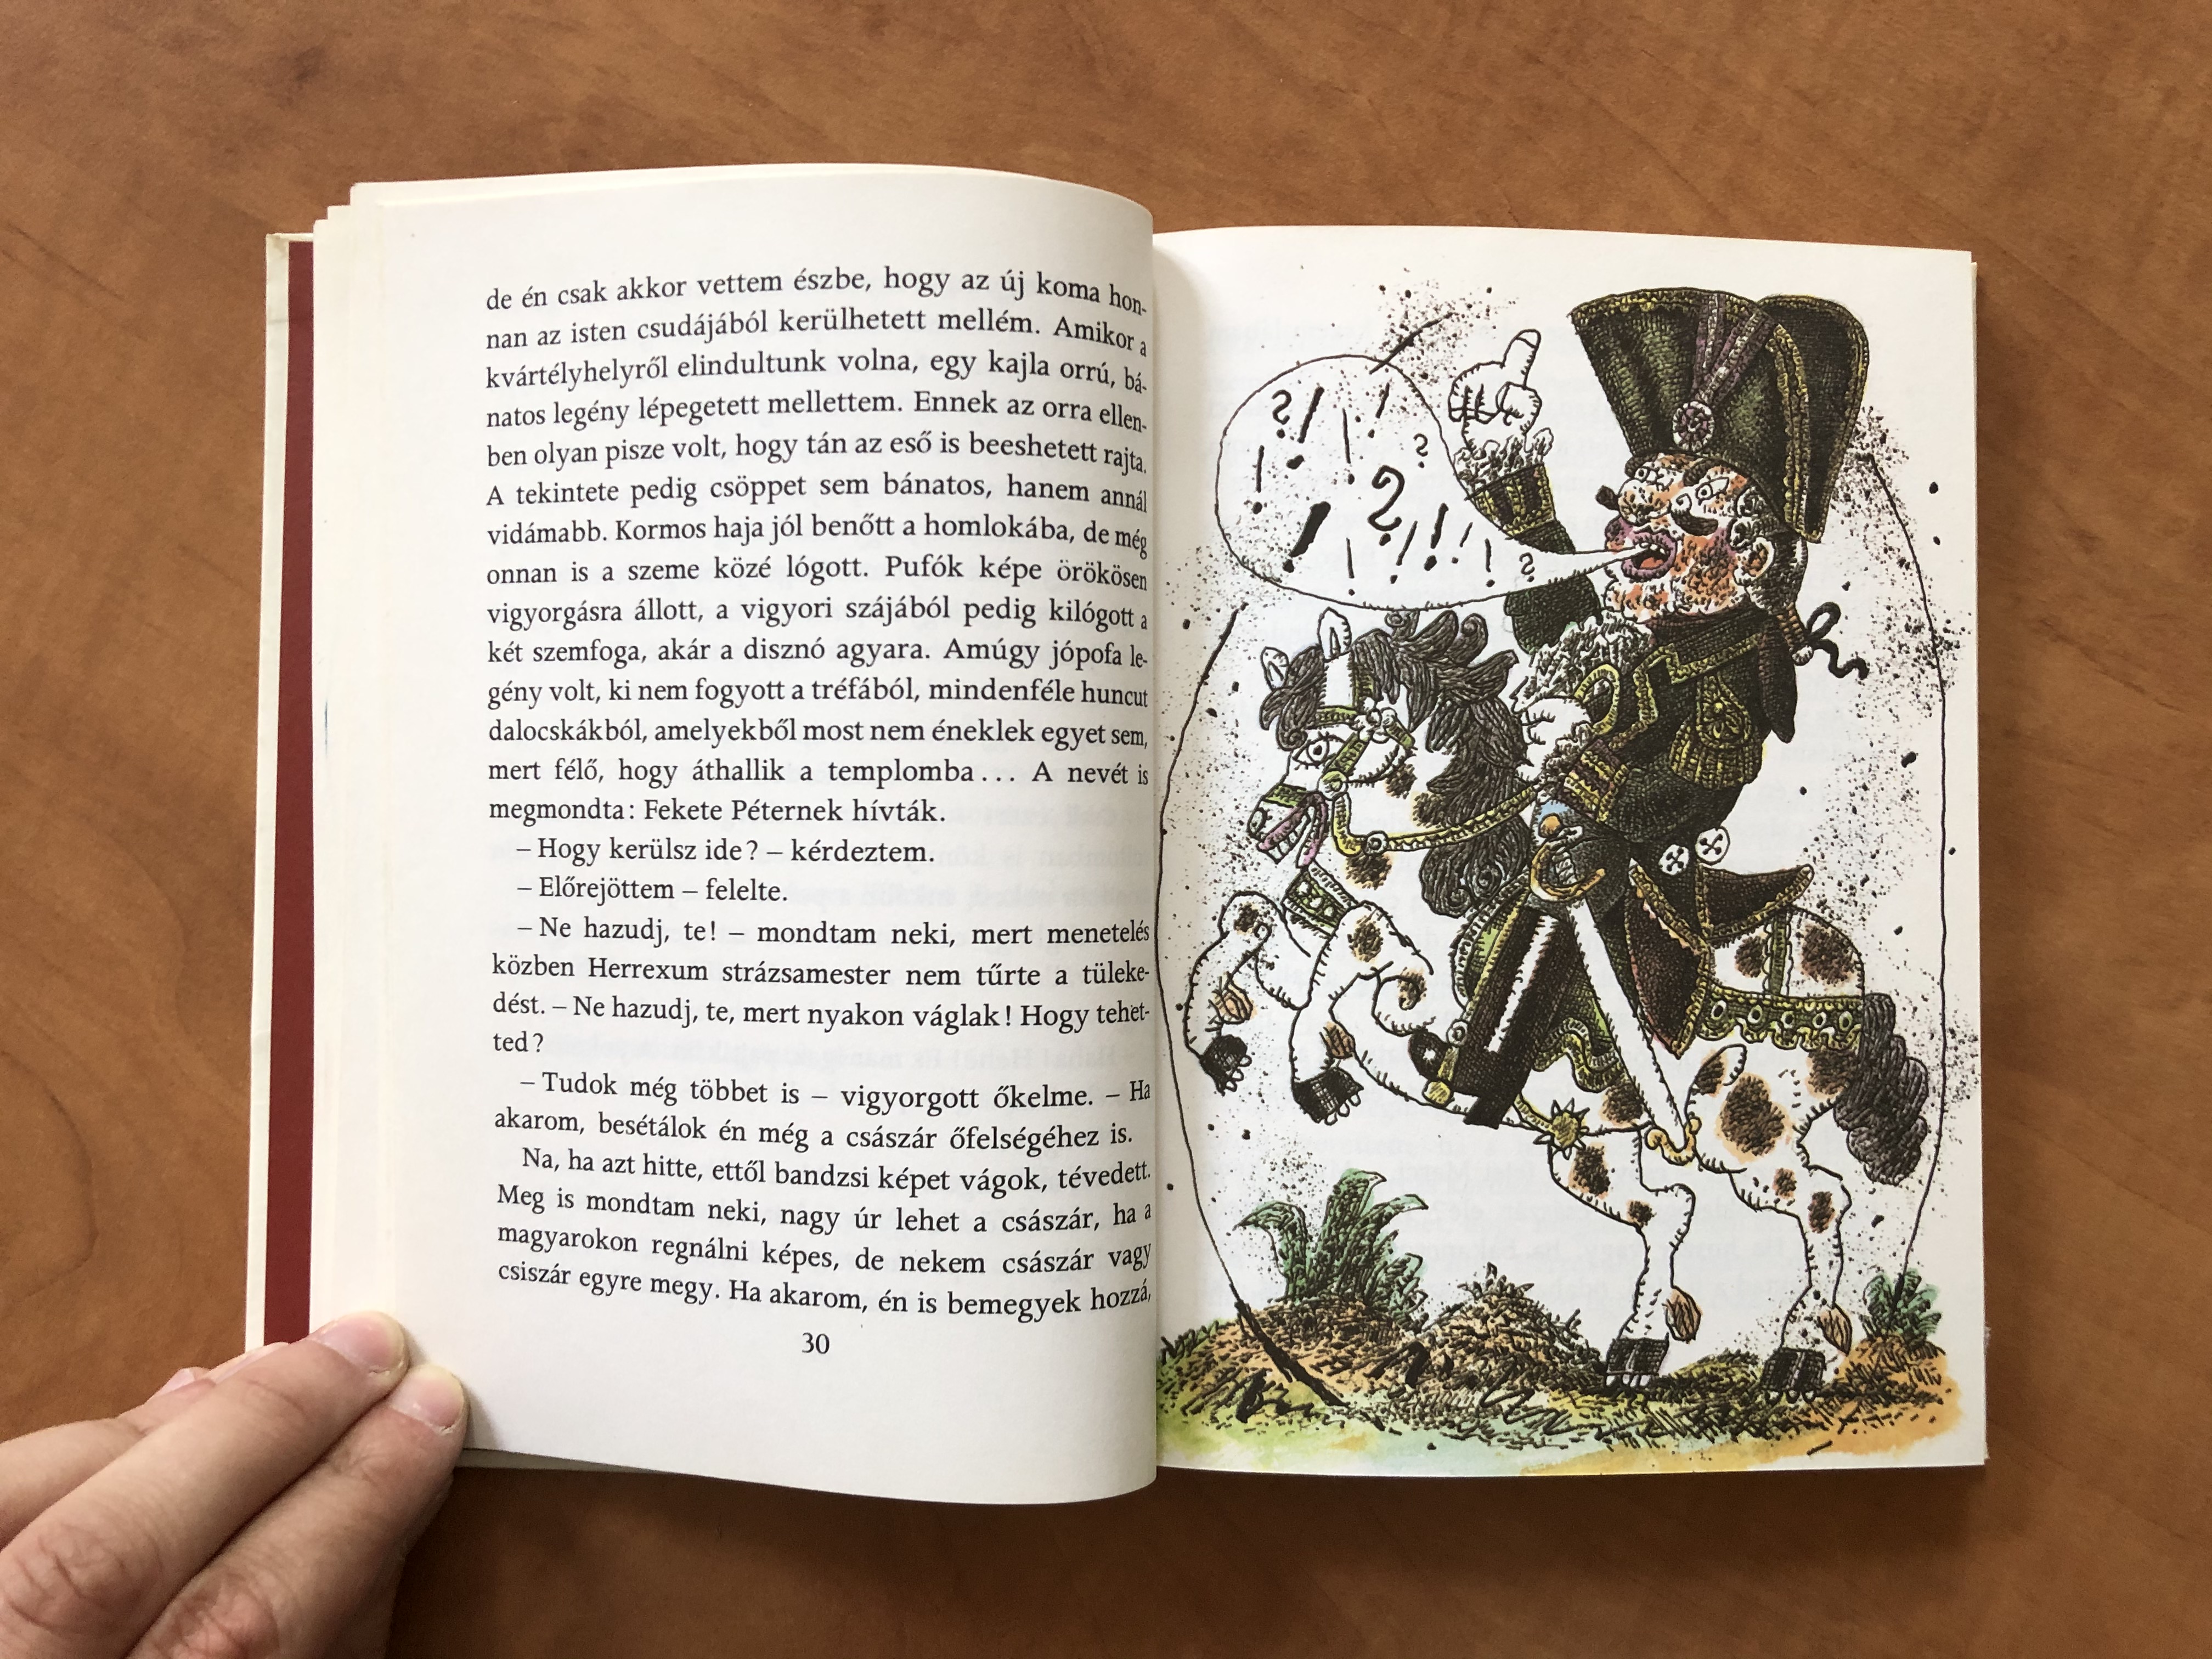 Az a híres Háry János by Rónaszegi Miklós / Illustrated by Gyulai Líviusz  rajzaival / Móra könyvkiadó 1980 / Hardcover / Hungarian folk tales -  bibleinmylanguage